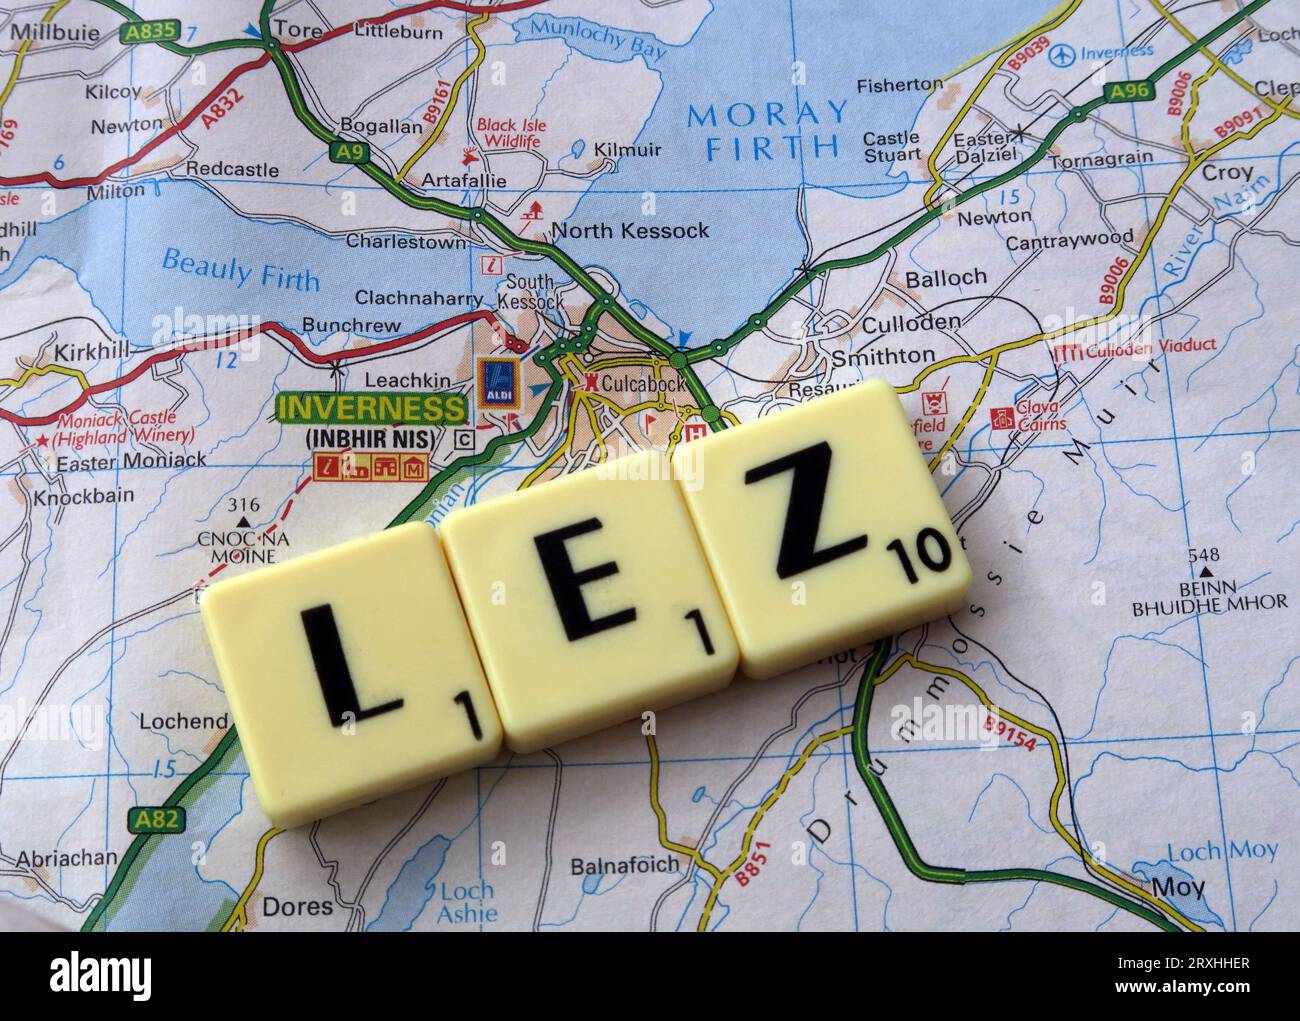 Inverness LEZ Low Emission zone - en mots, lettres Scrabble sur une carte Banque D'Images